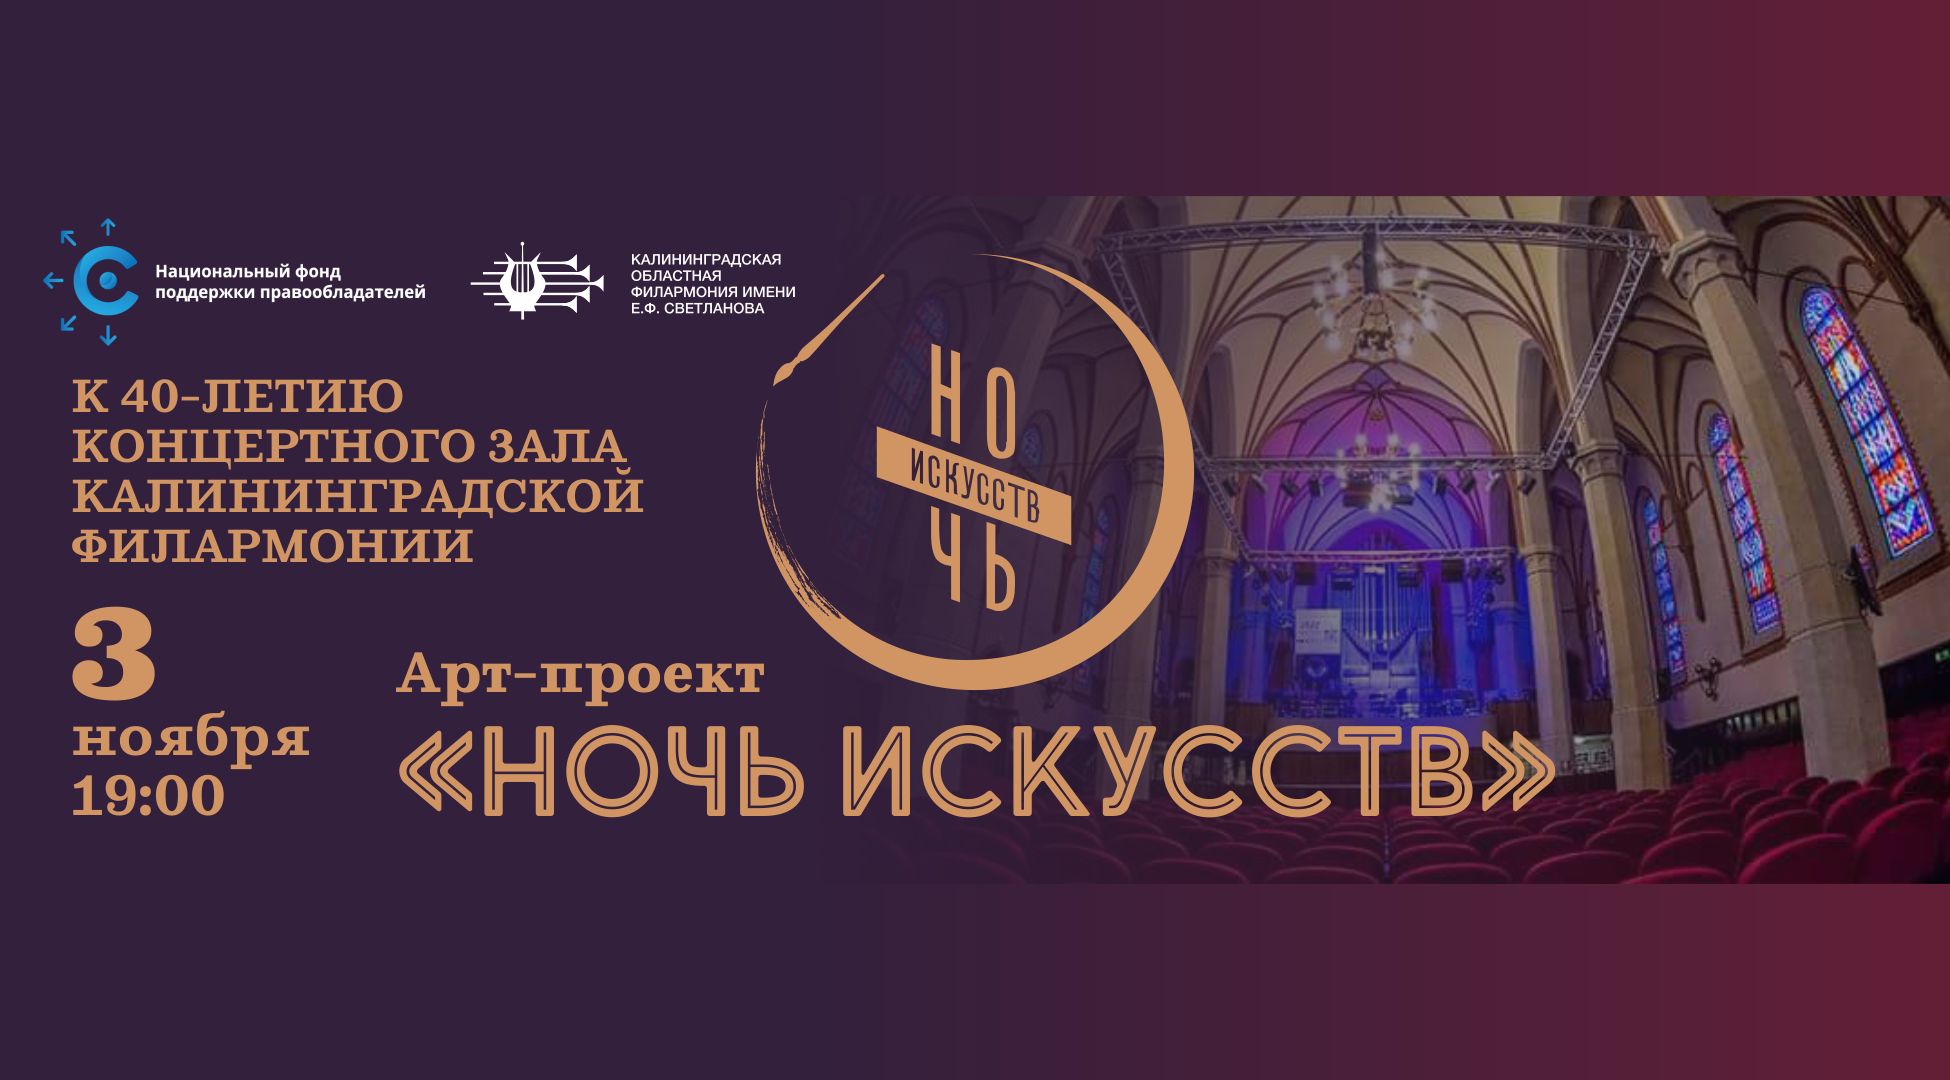 Концертный зал Калининградской филармонии отметит юбилей при участии НФПП